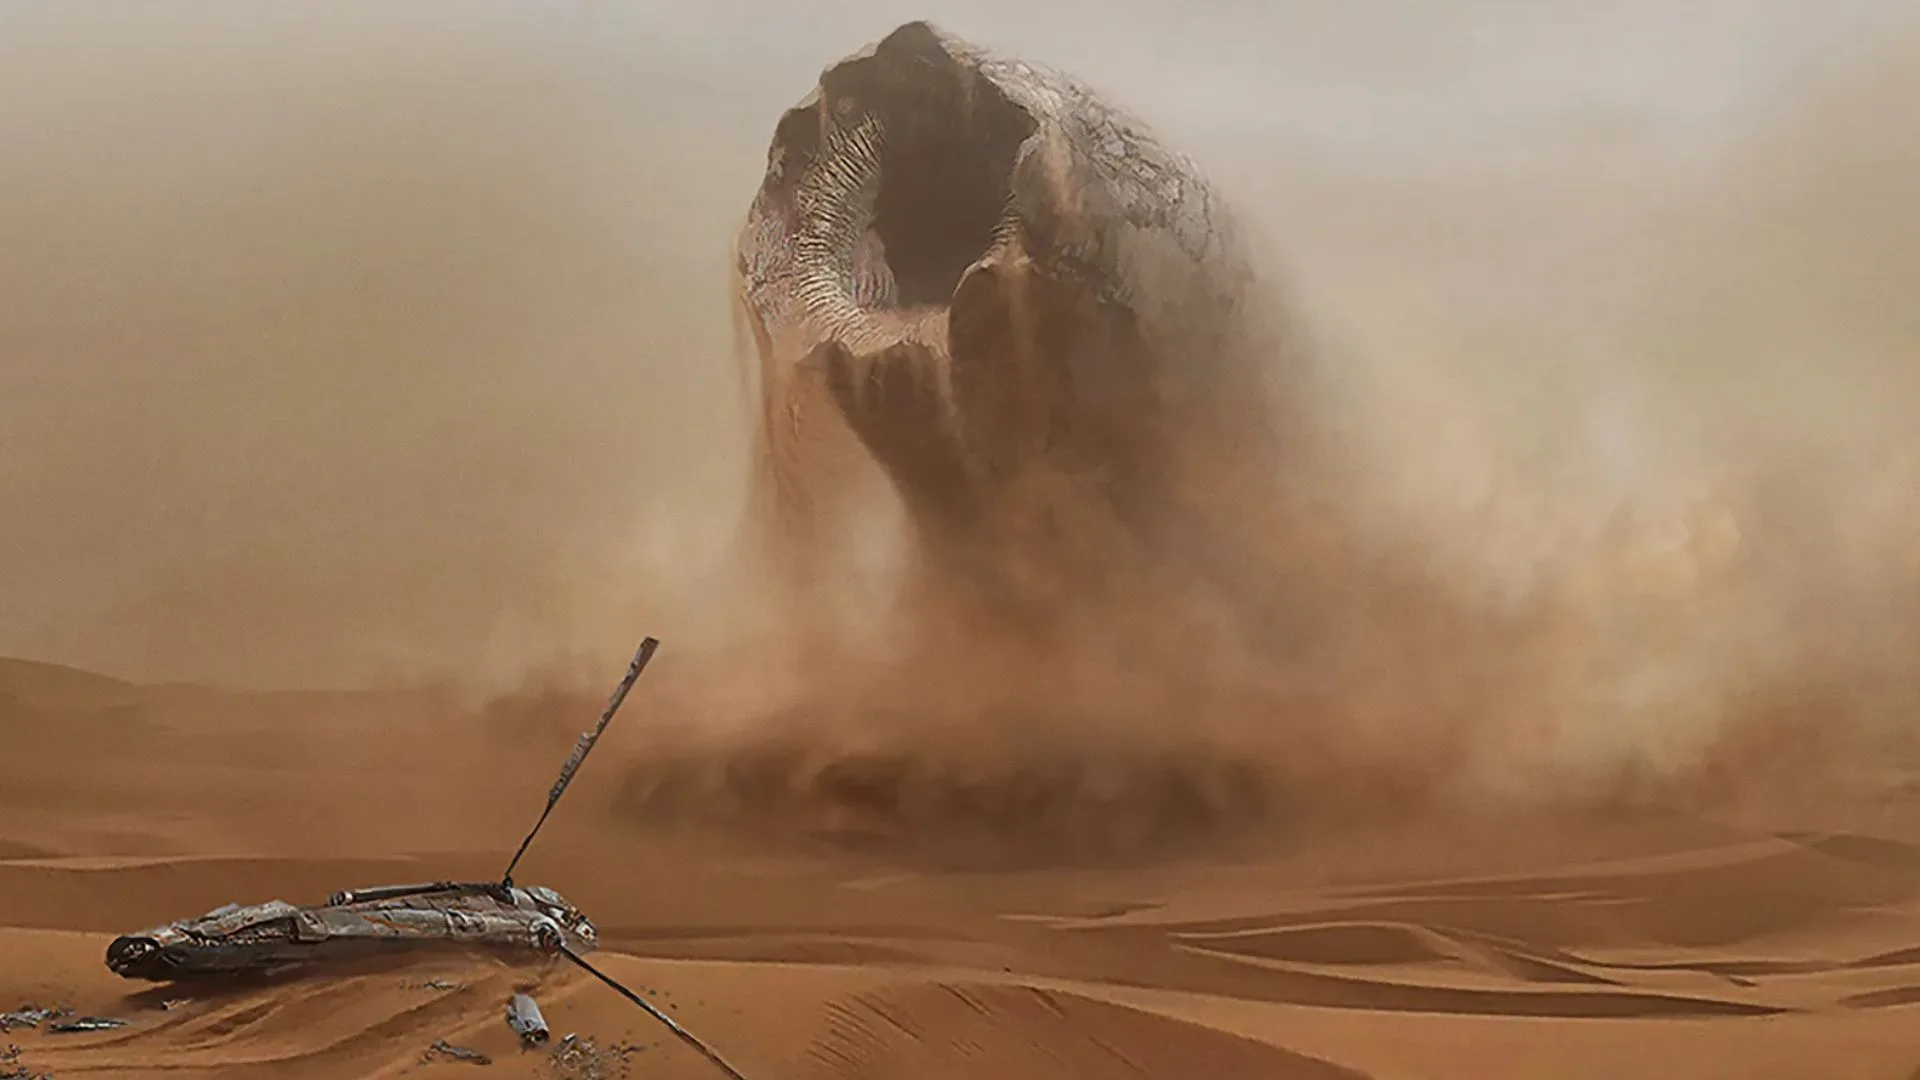 Gusanos de arena: Éstas son criaturas gigantes que habitan las arenas de Arrakis y son una fuente de peligro y fascinación.